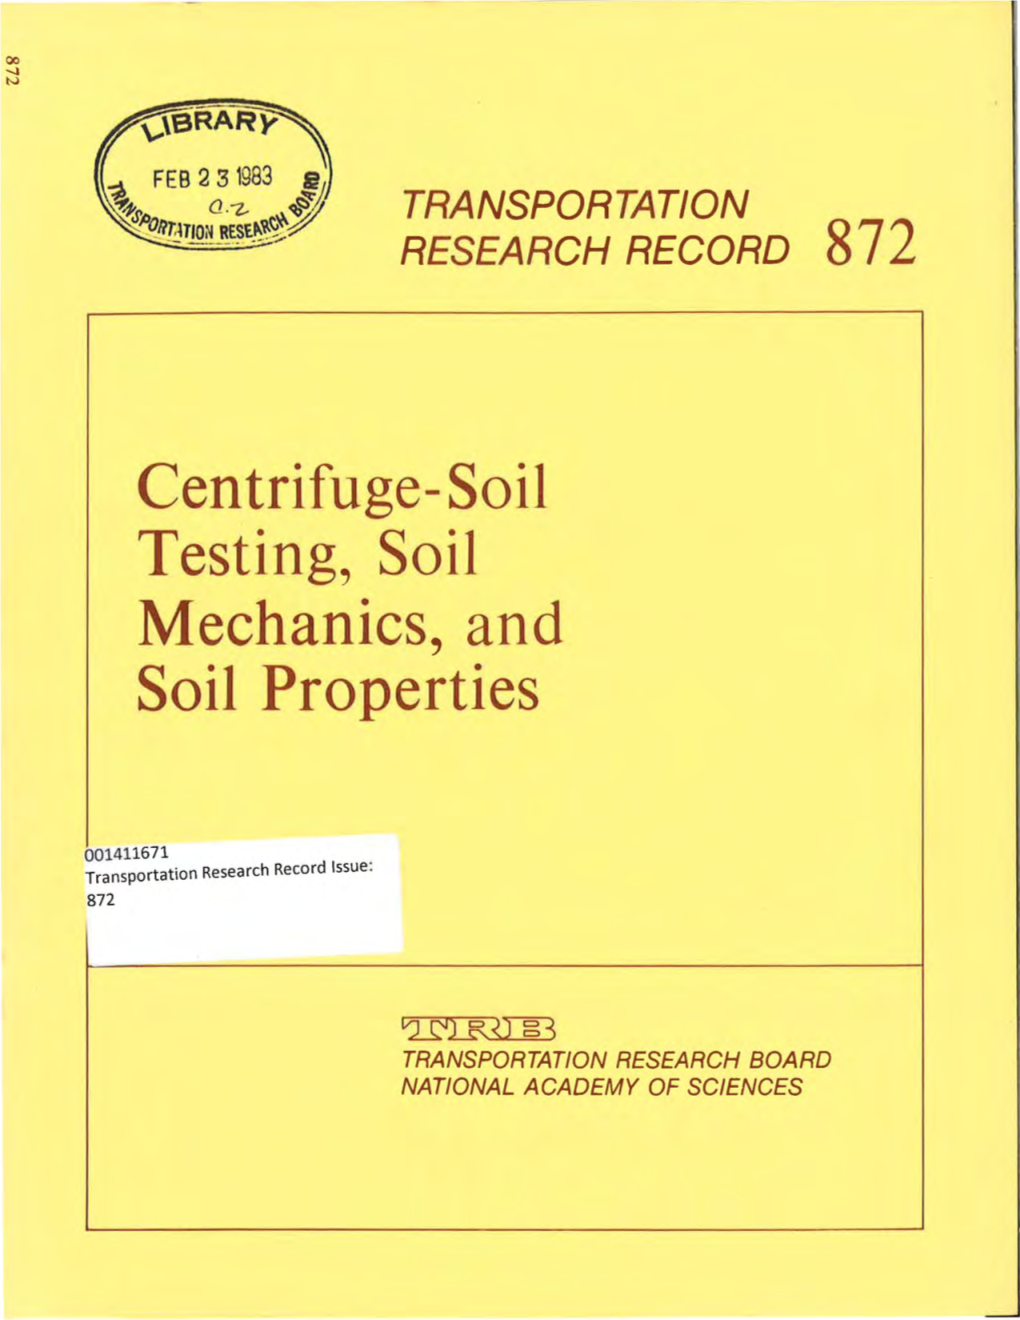 Centrifuge-Soil Testing, Soil Mechanics and Soil Properties